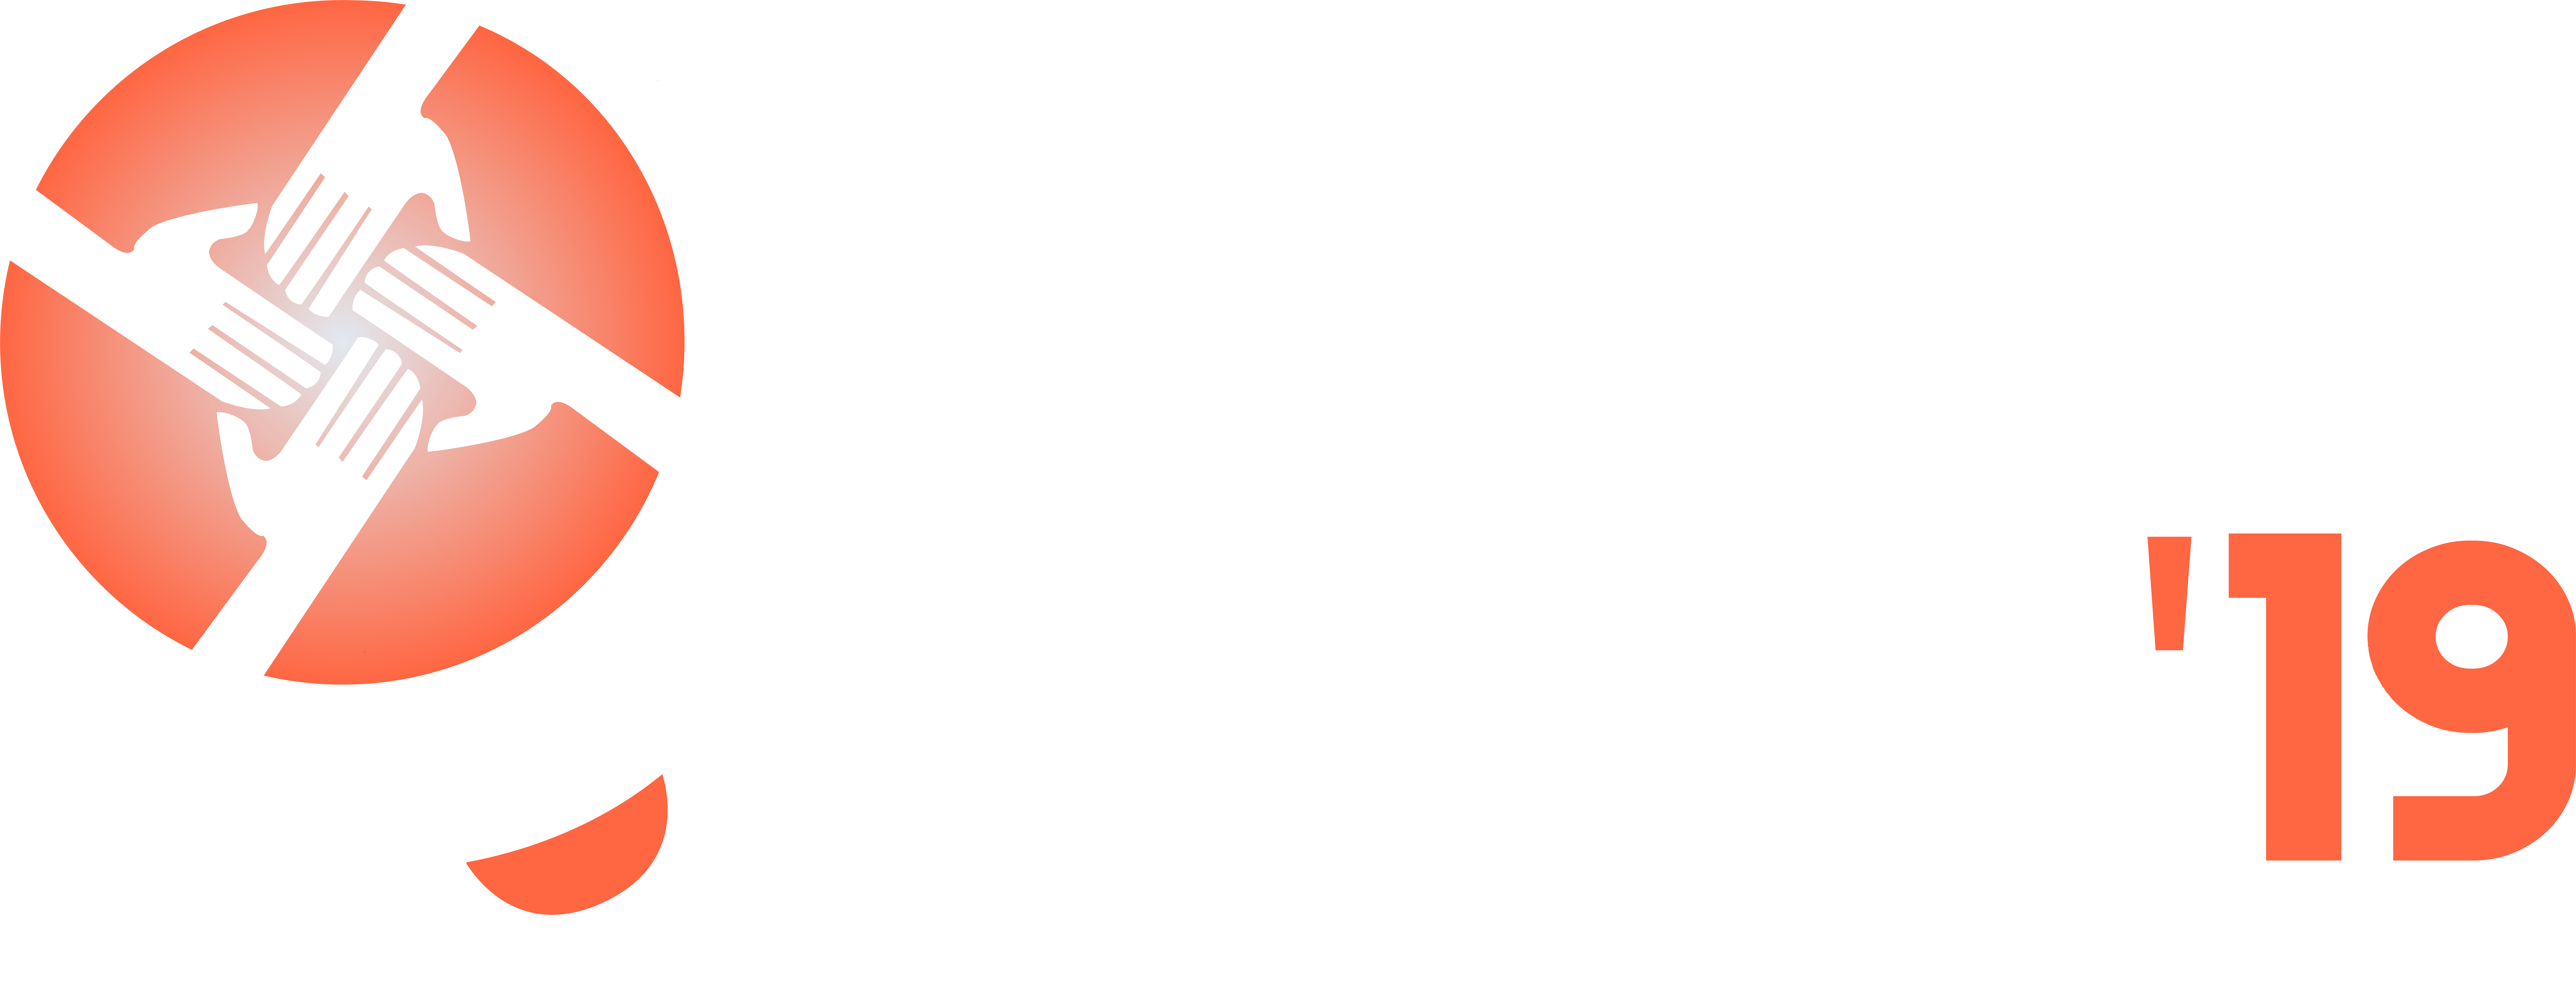 NSSC Logo - NSSC'19 | Welcome